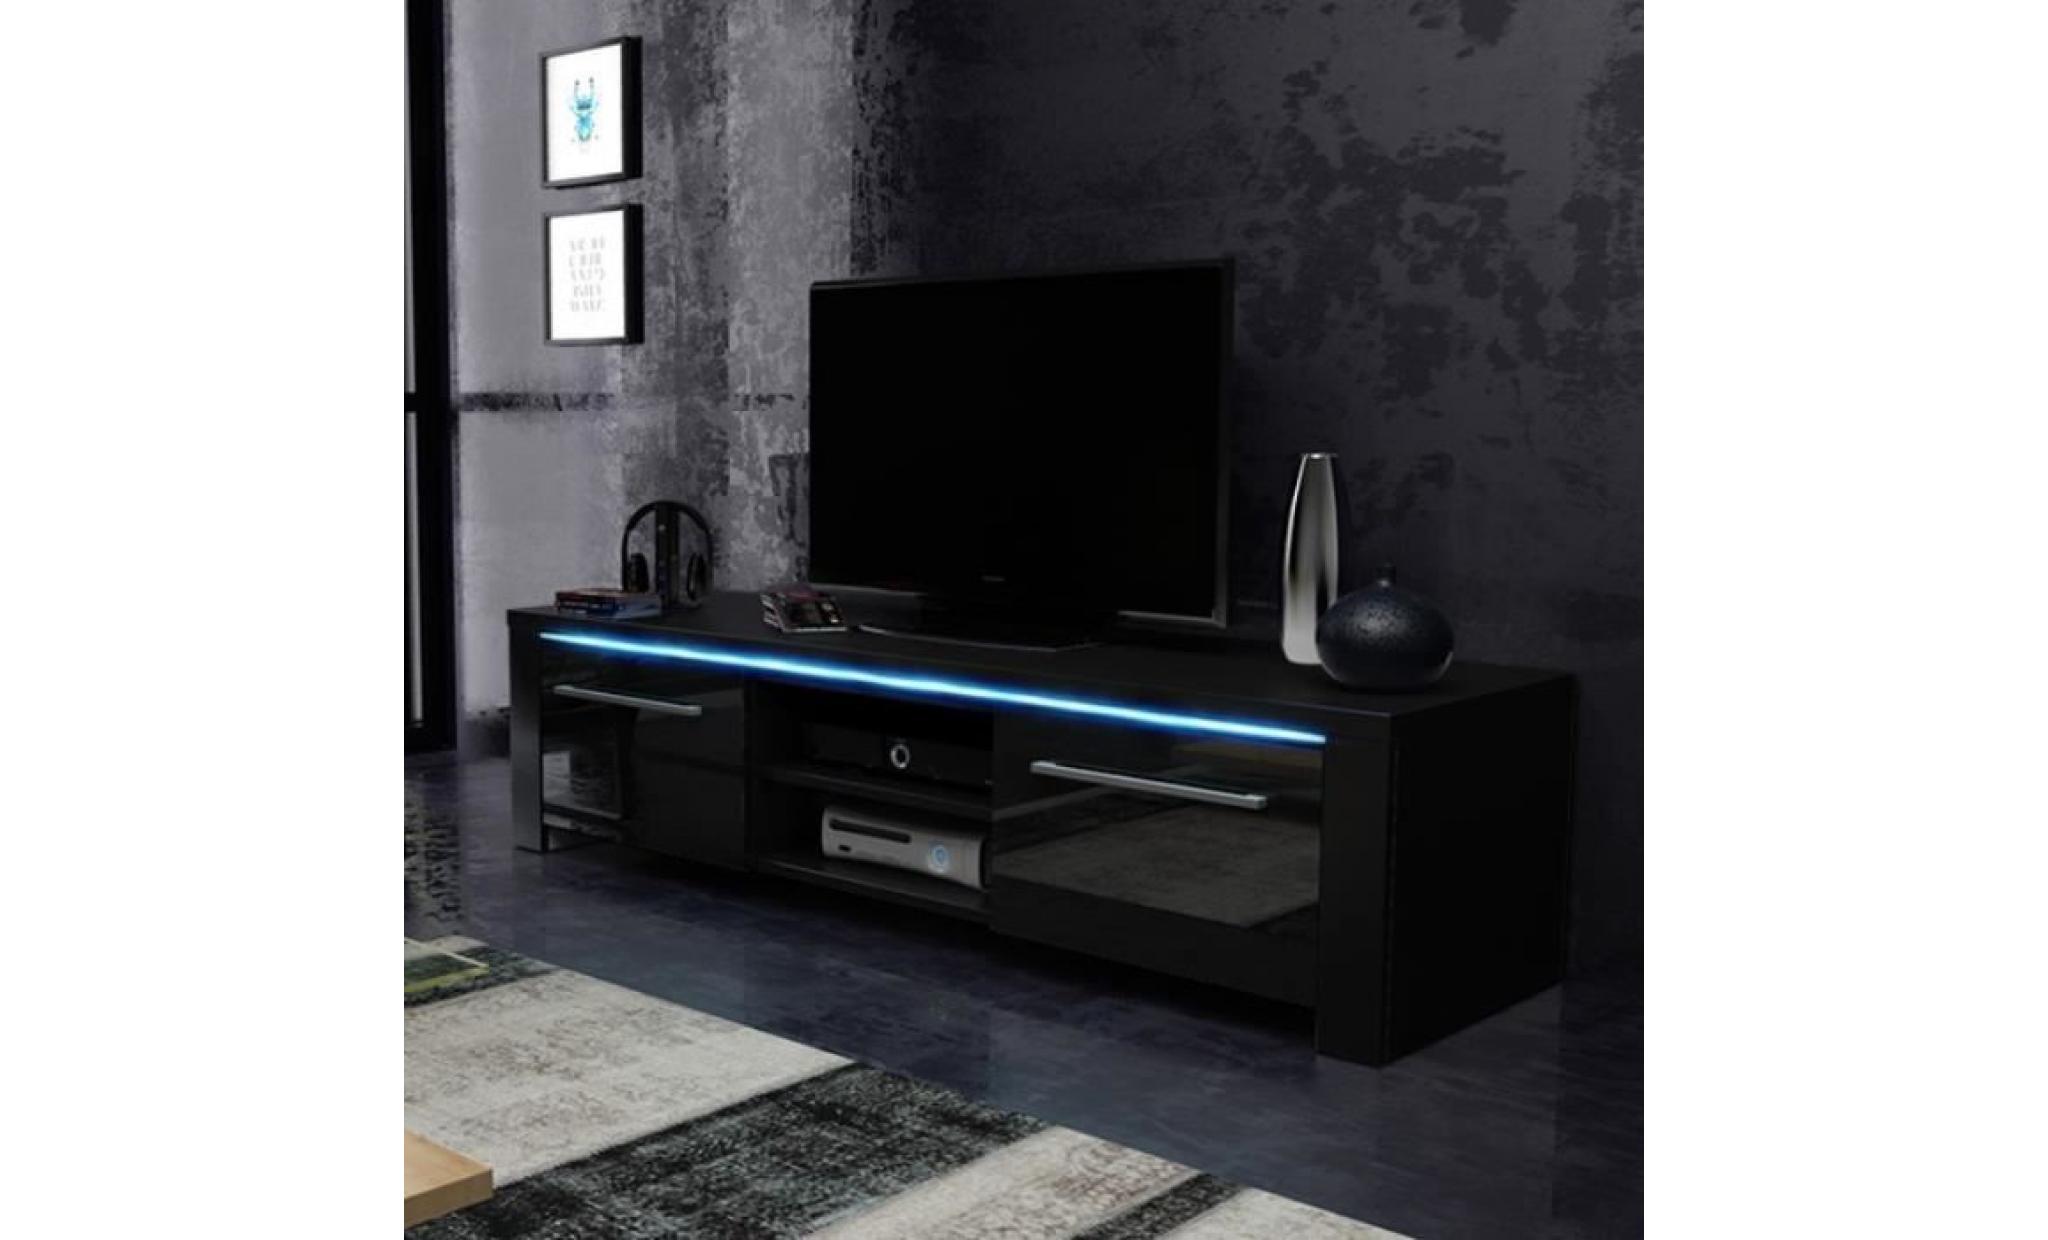 meuble tv / meuble salon   messa   140 cm   noir mat / noir brillant   avec led bleue   style moderne   très fonctionnel